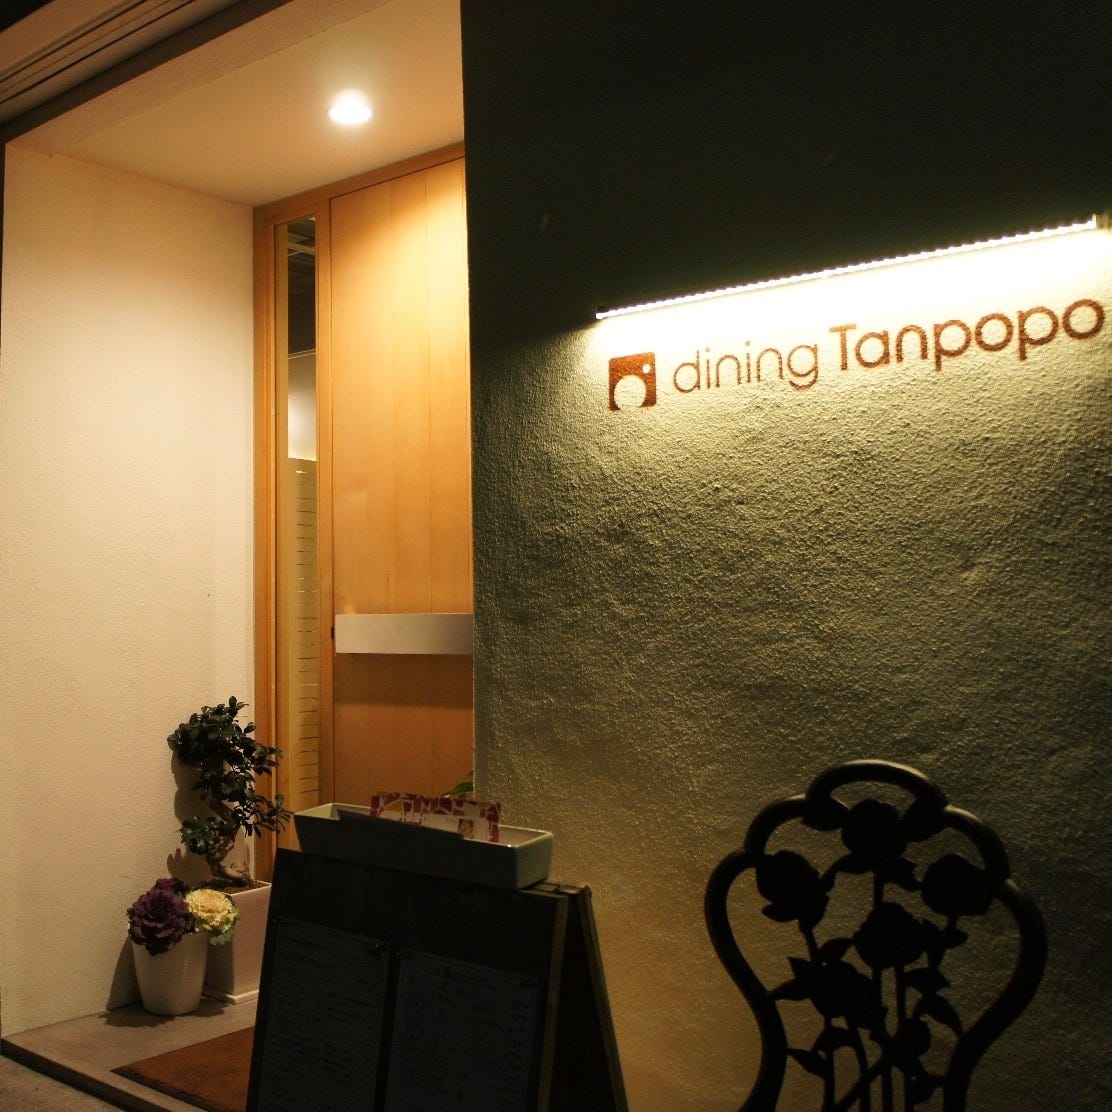 dining Tanpopo(ダイニングタンポポ)のURL1